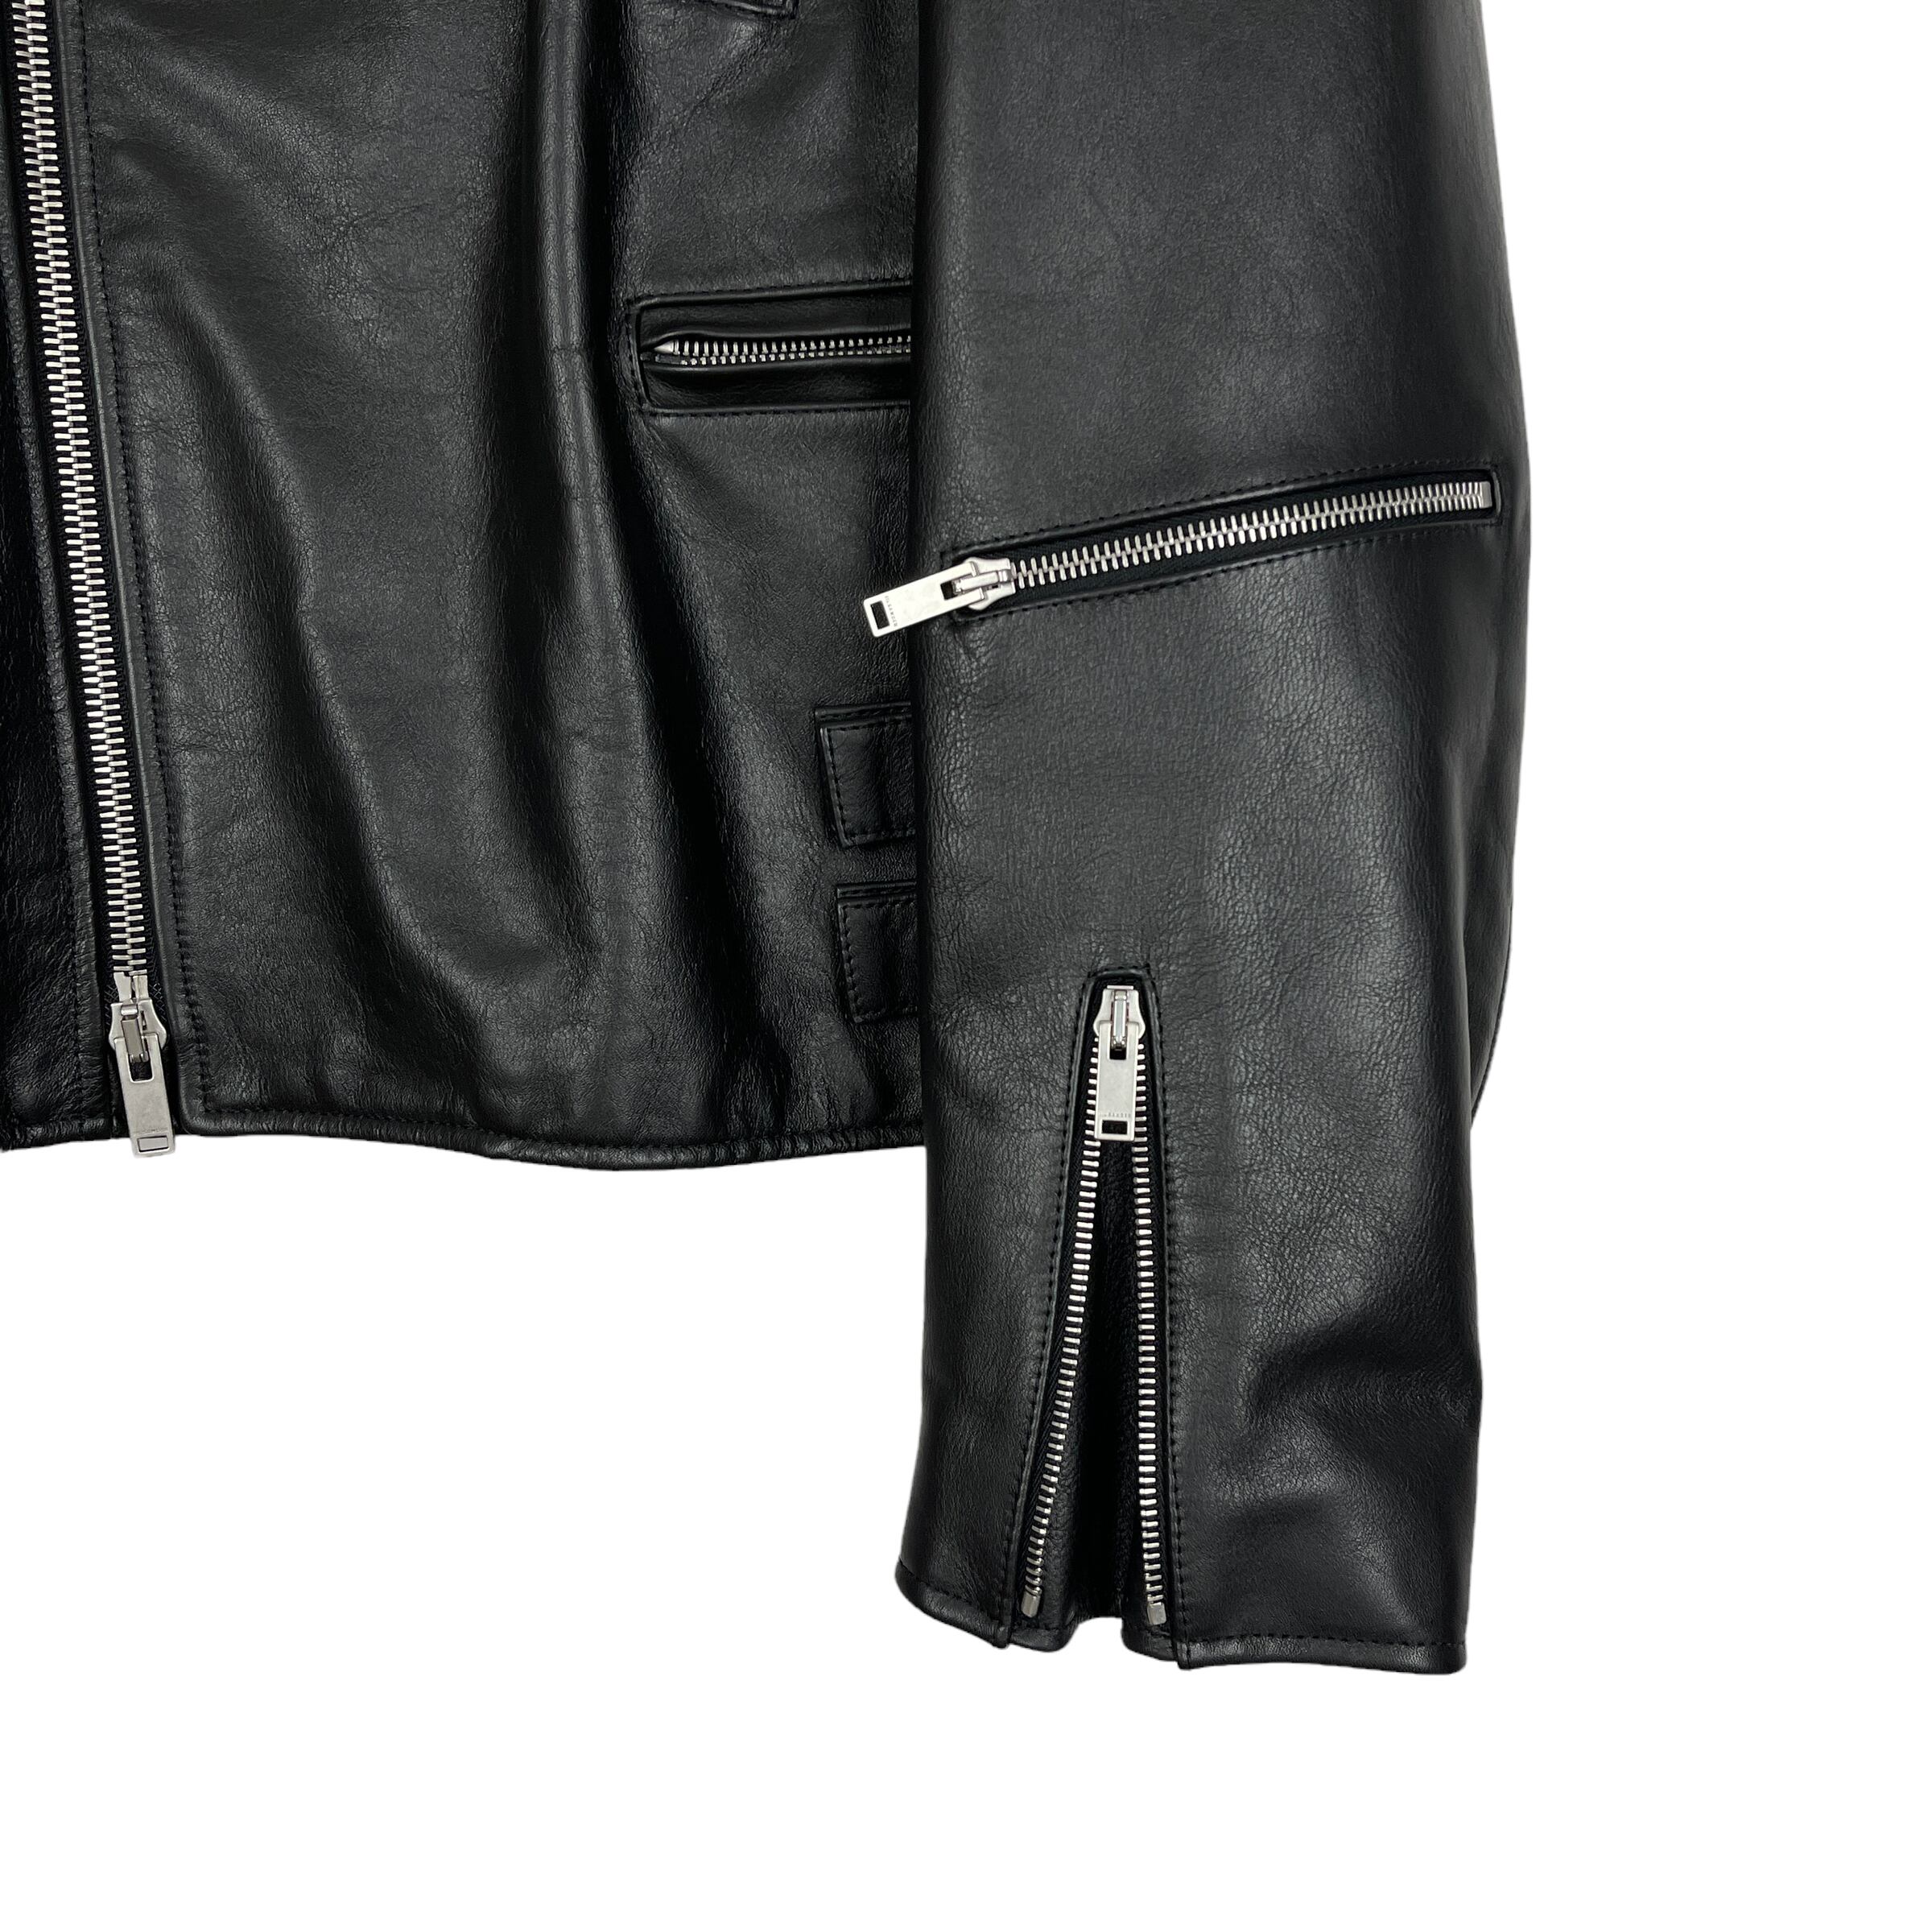 JIL SANDER(ジルサンダー) Santa Maria Novella leather jacket 20AW